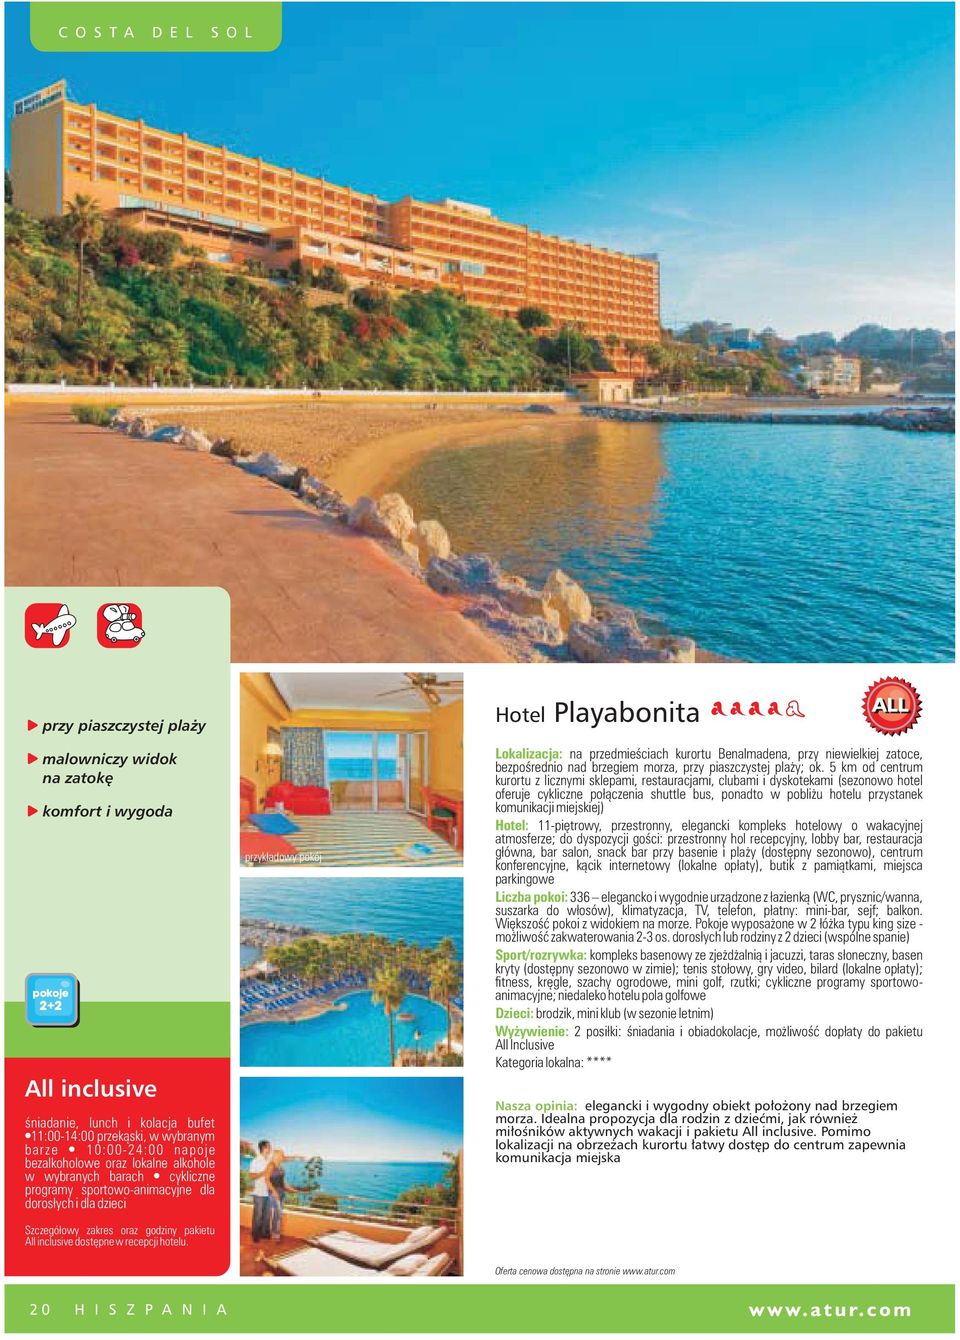 Hotel Playabonita Lokalizacja: na przedmieœciach kurortu Benalmadena, przy niewielkiej zatoce, bezpoœrednio nad brzegiem morza, przy piaszczystej pla y; ok.